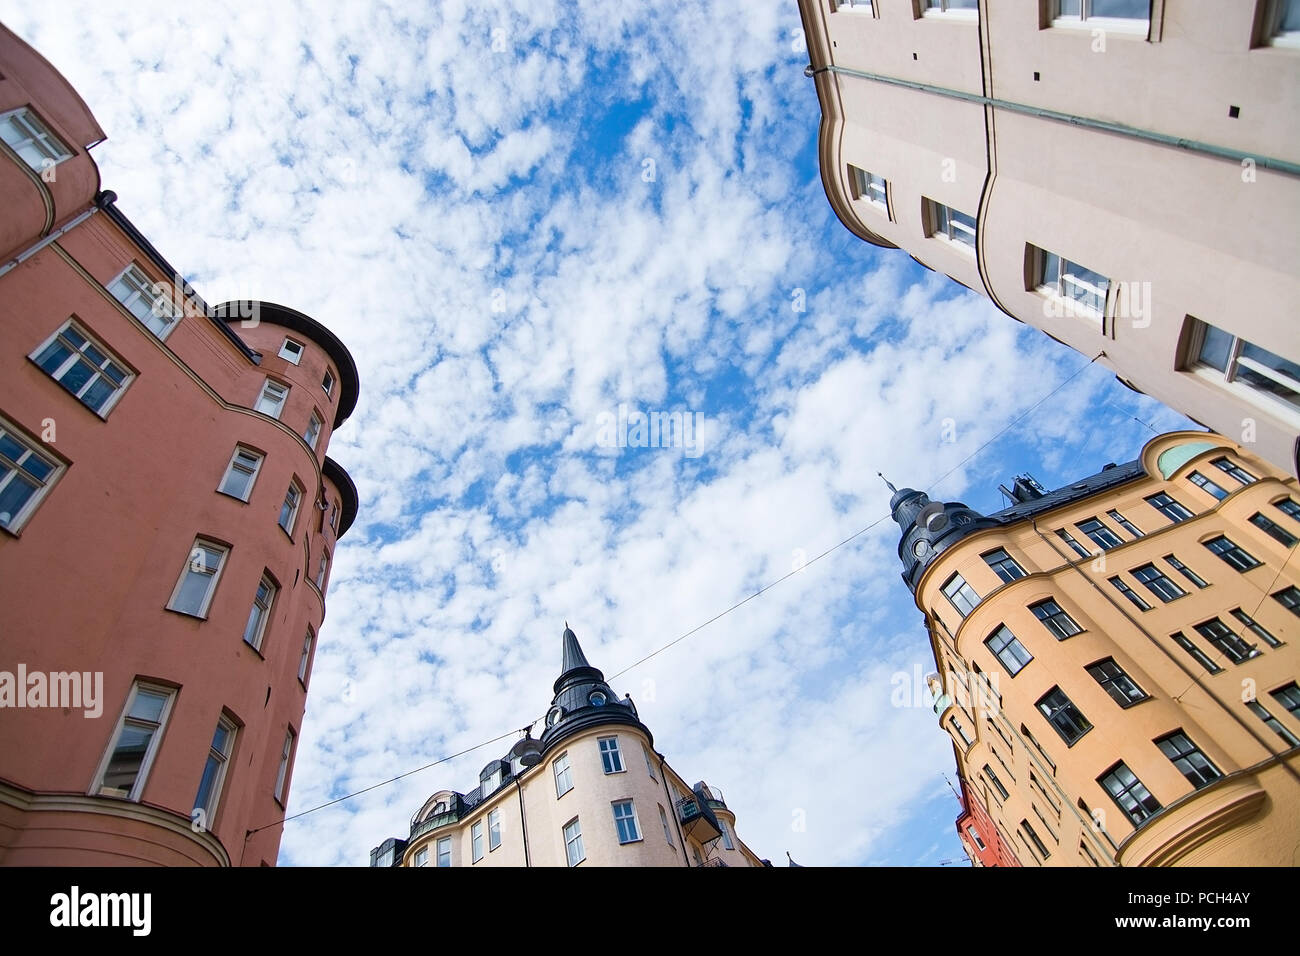 Vasastan typische jahrhundert alte Gebäude in Gelb Beige und Rot reibeputz in Stockholm, Schweden. Stockfoto